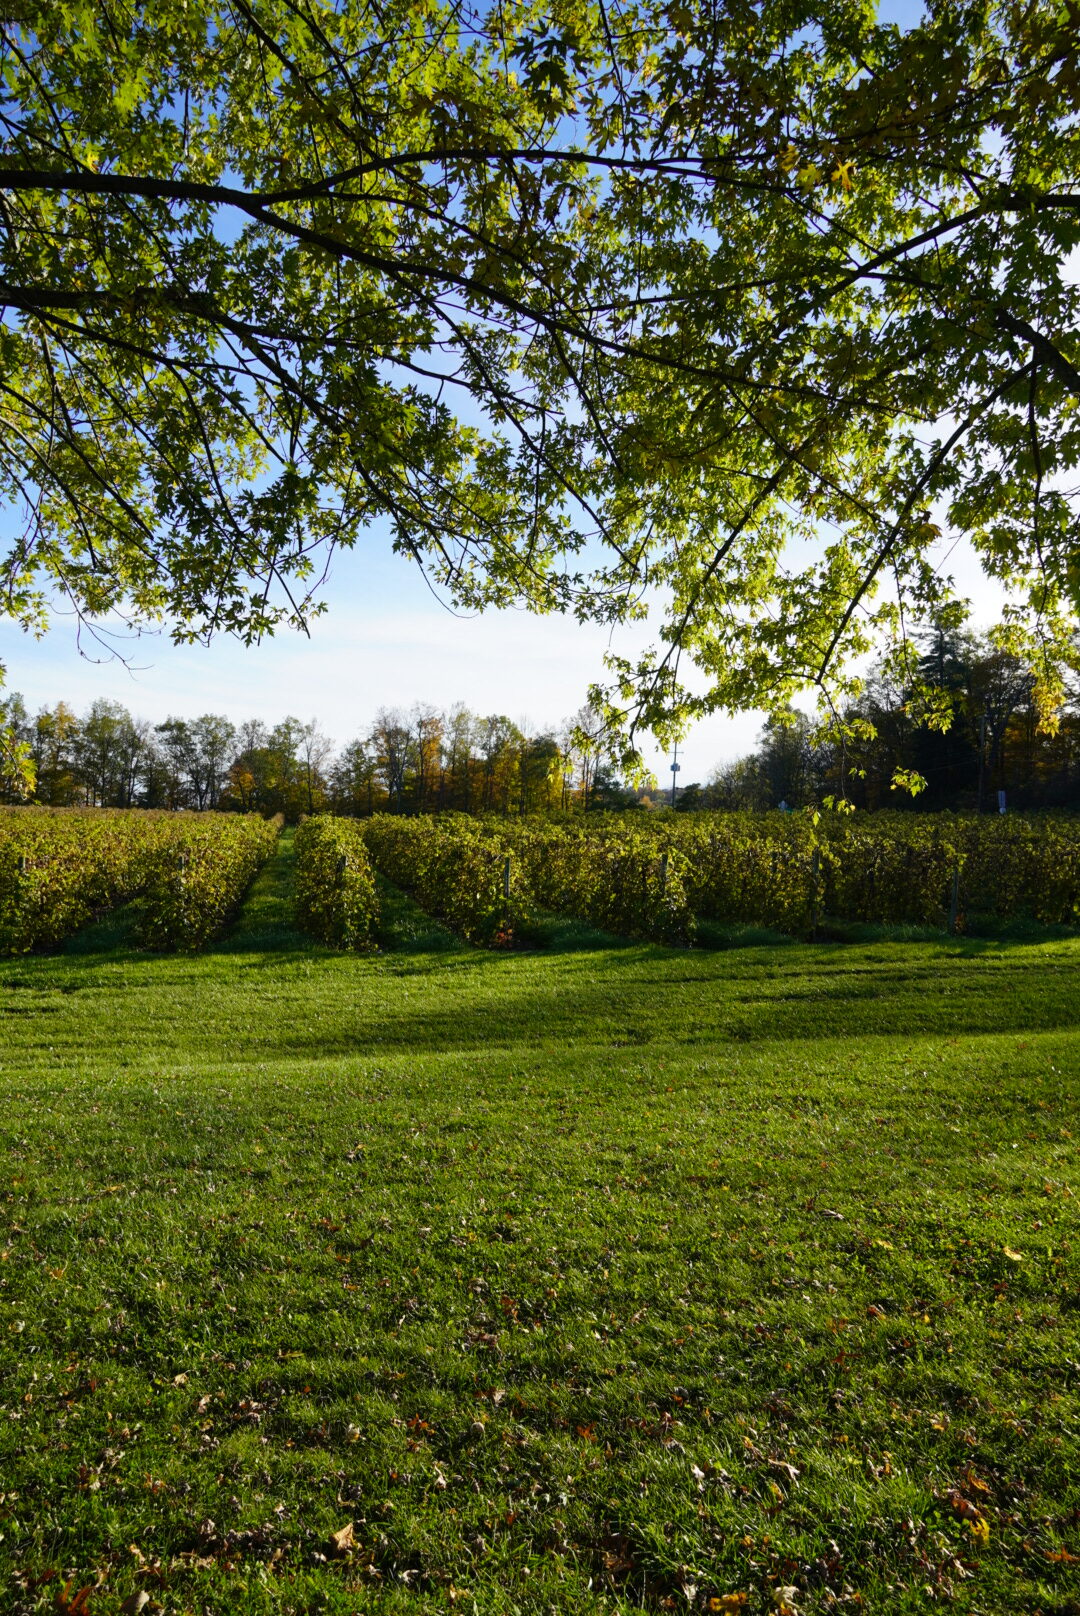 Lakewood Vineyards Watkins Glen in the fall